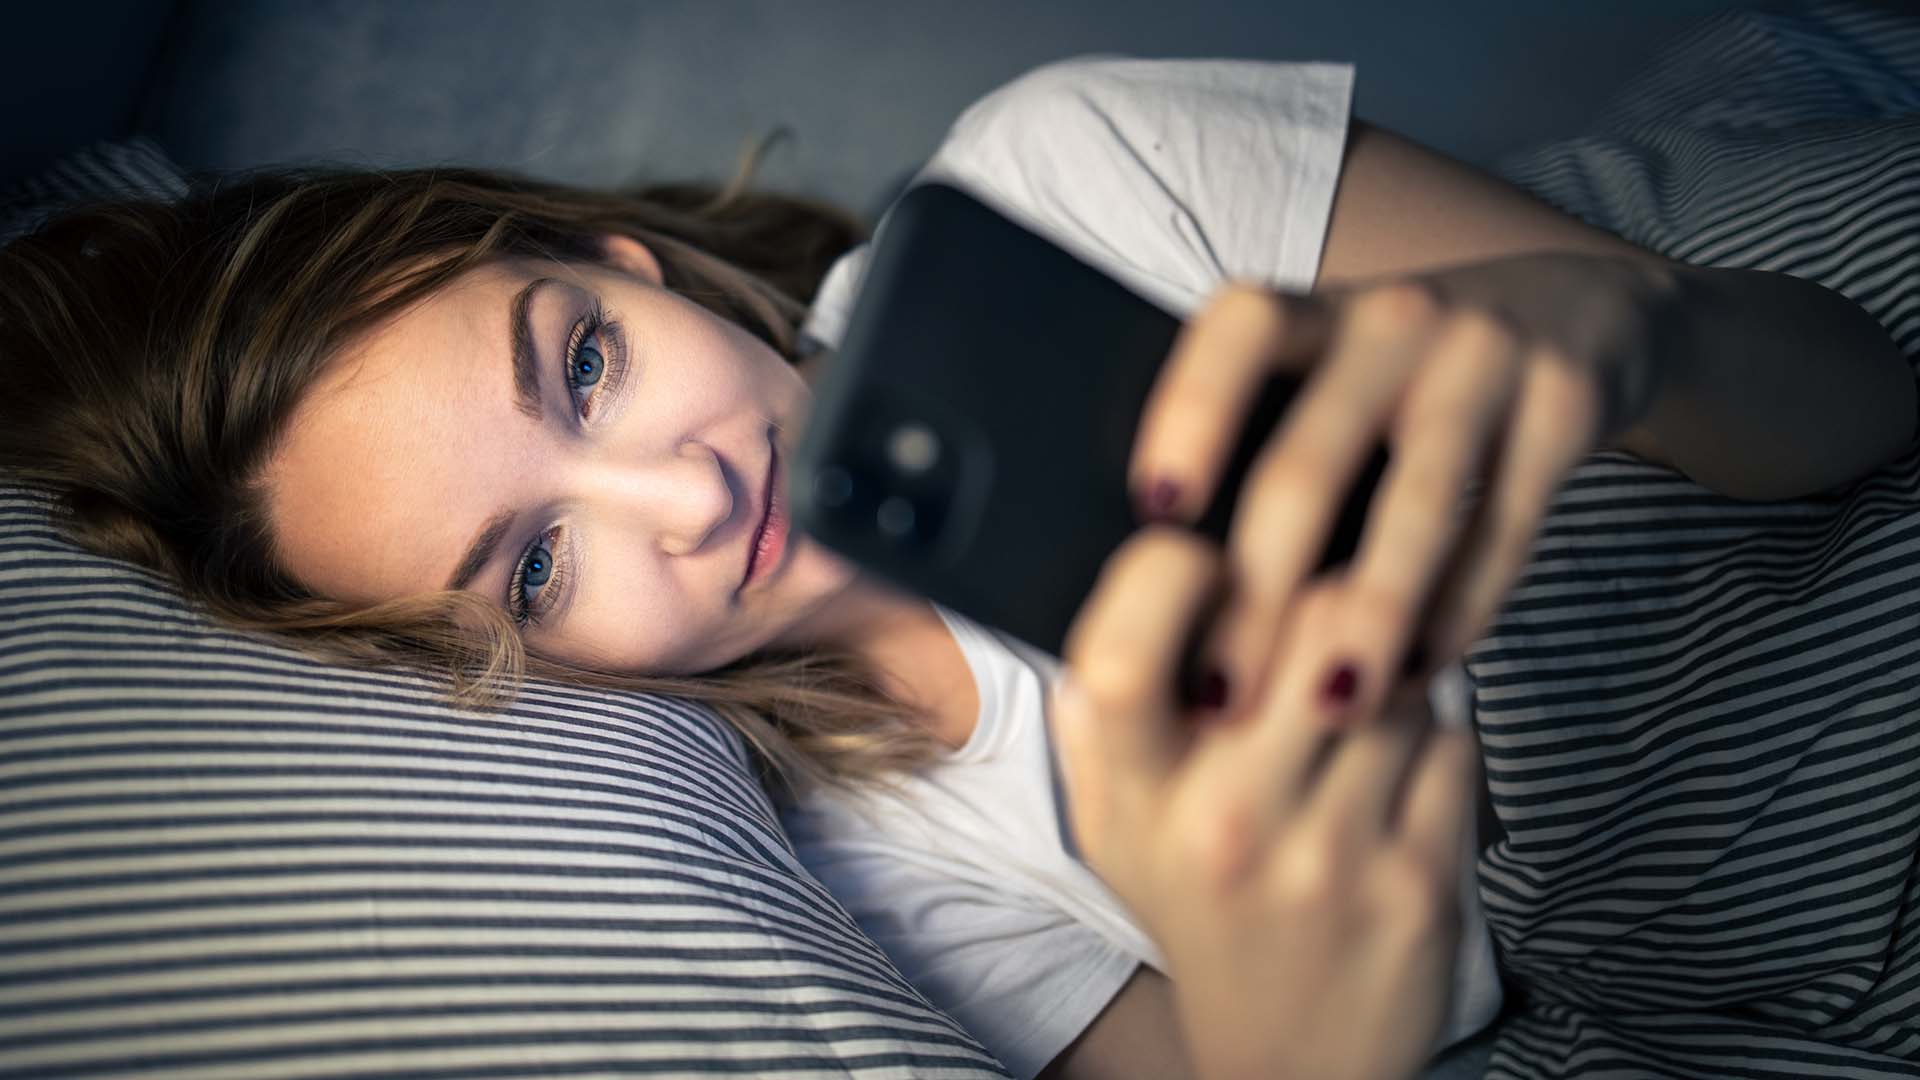 La Profeco recomienda vigilar el contenido que niños y adolescentes consumen en internet (Foto: Shutterstock)